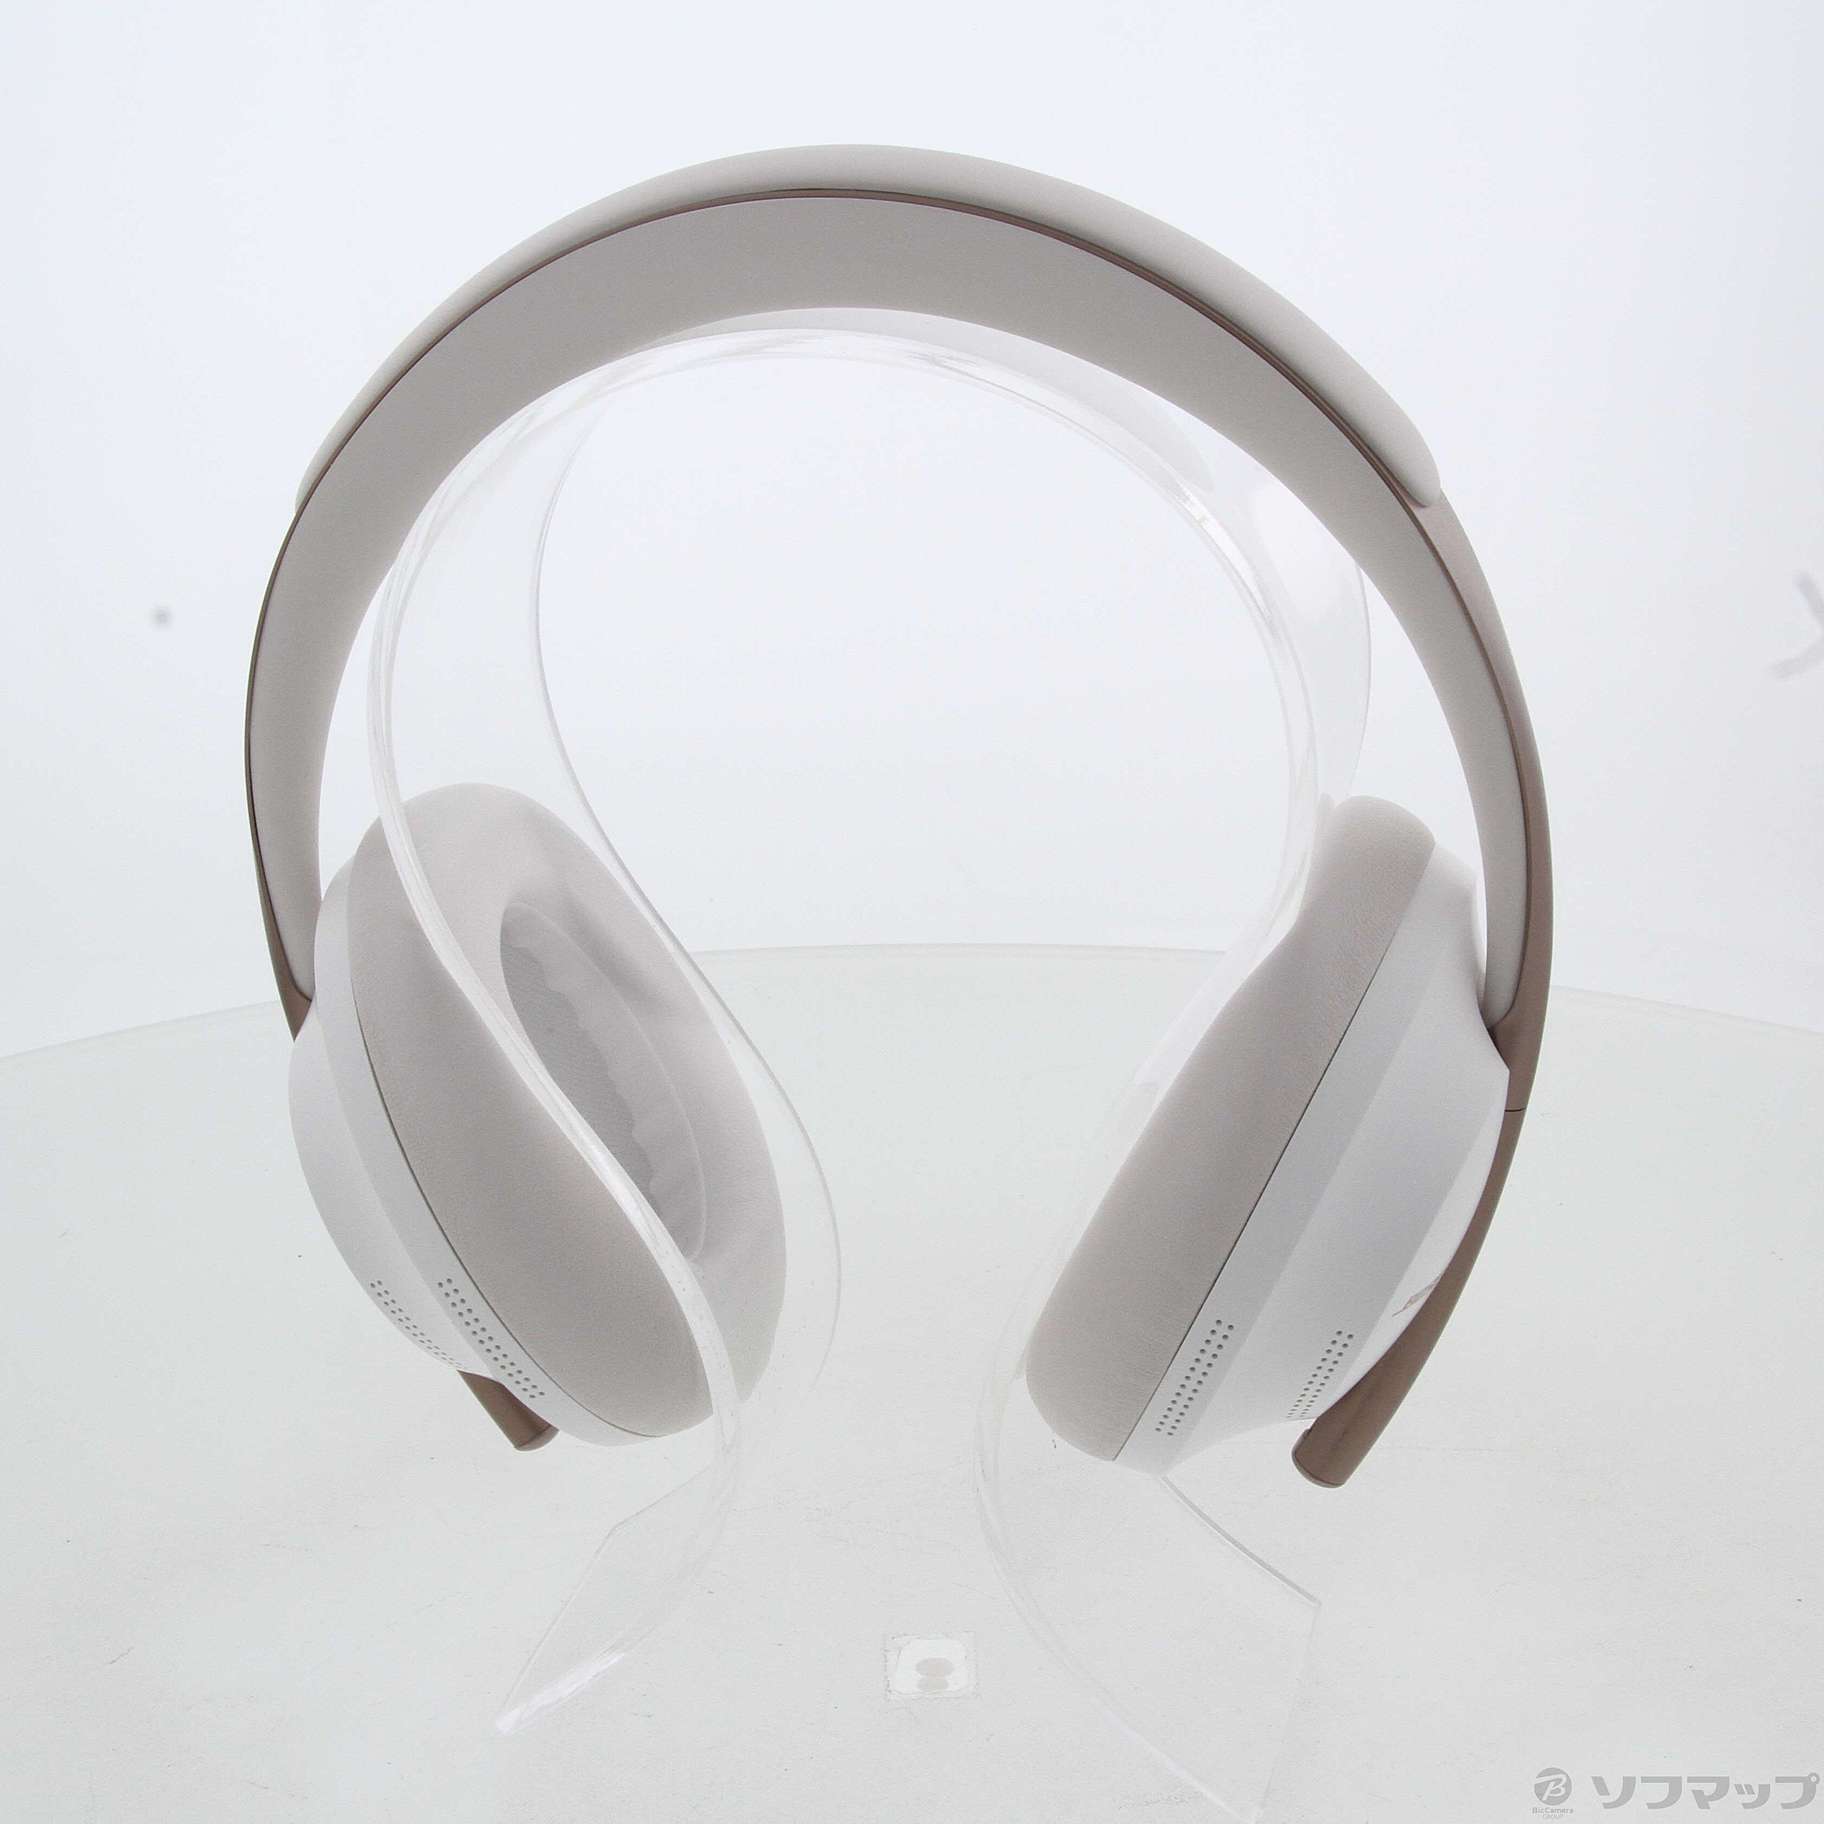 中古】Bose Noise Cancelling Headphones 700 ソープストーン ...